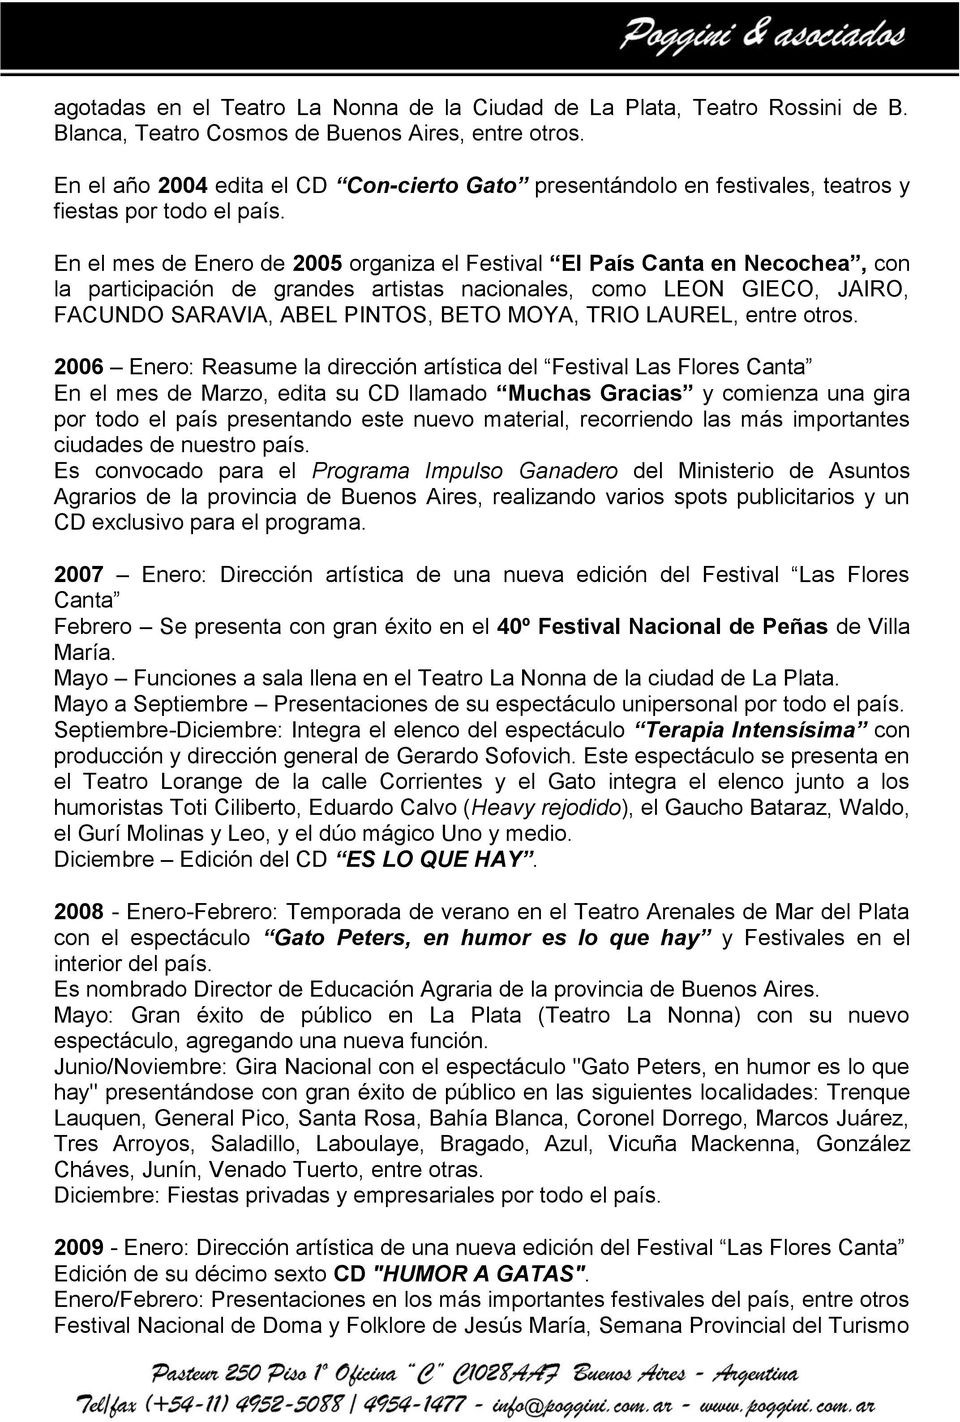 En el mes de Enero de 2005 organiza el Festival El País Canta en Necochea, con la participación de grandes artistas nacionales, como LEON GIECO, JAIRO, FACUNDO SARAVIA, ABEL PINTOS, BETO MOYA, TRIO